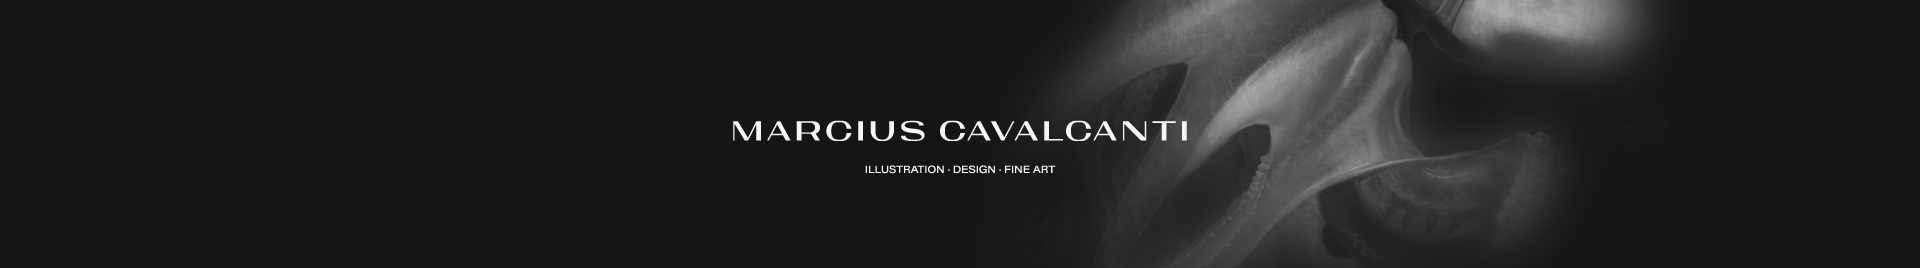 Marcius Cavalcanti's profile banner